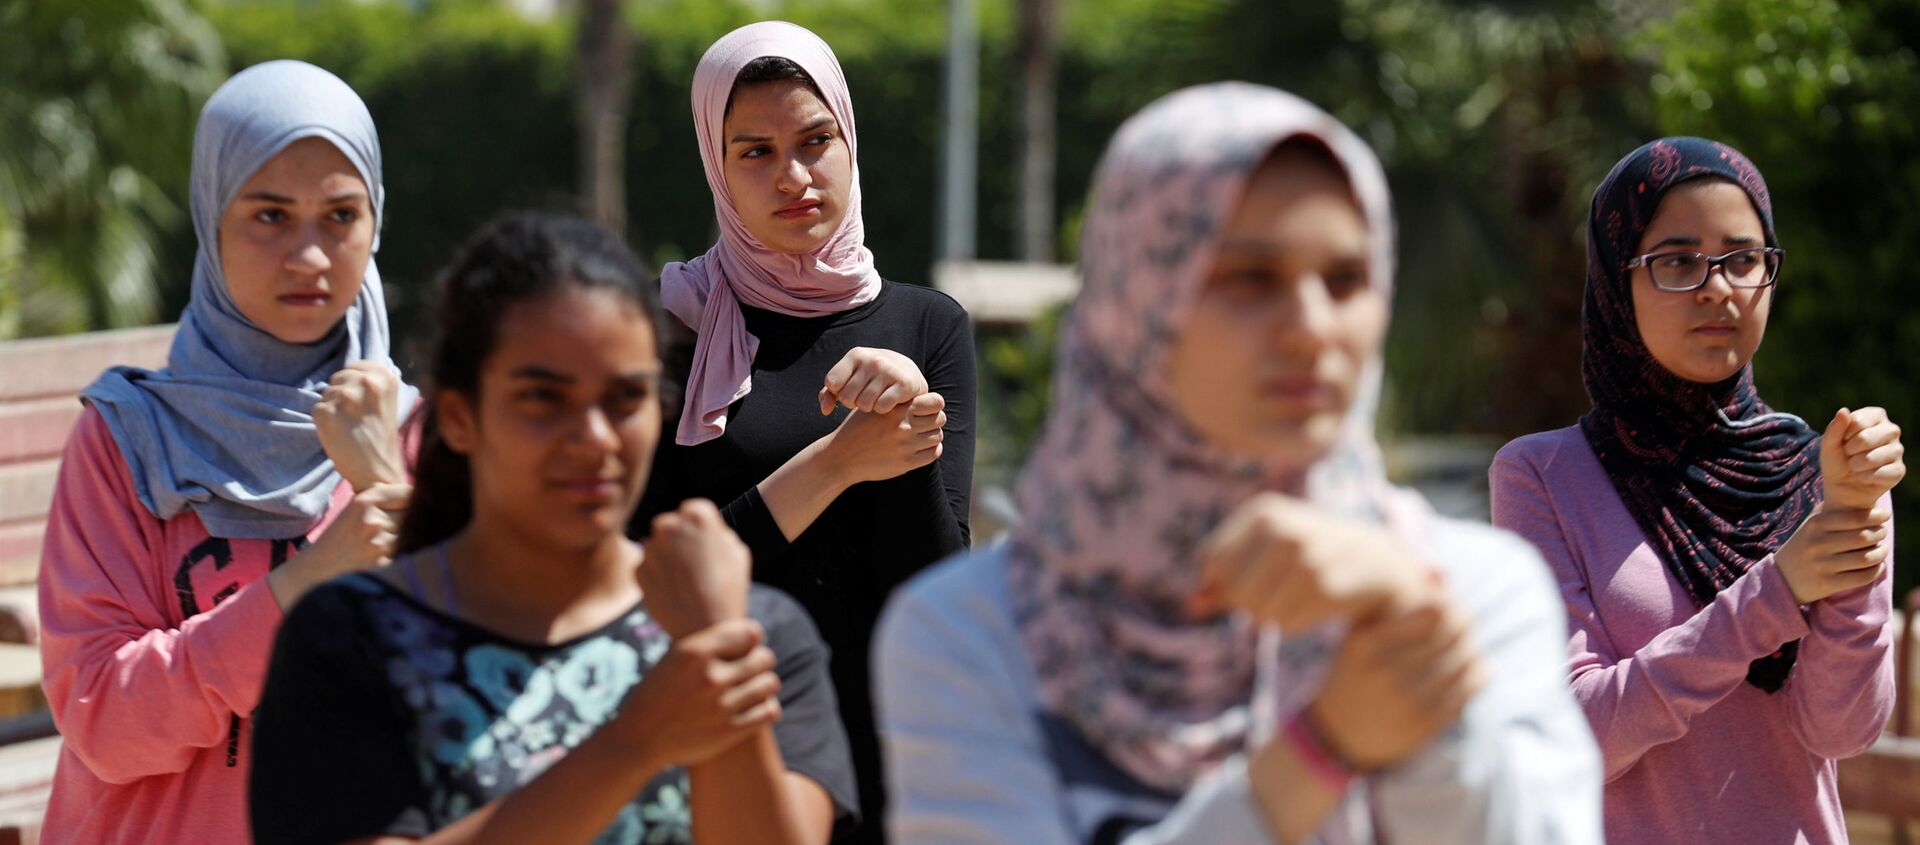 فتيات مصريات يستعرضن مهارات باركور في ضواحي القاهرة، مصر 20 يوليو/ تموز 2018 - سبوتنيك عربي, 1920, 31.01.2020